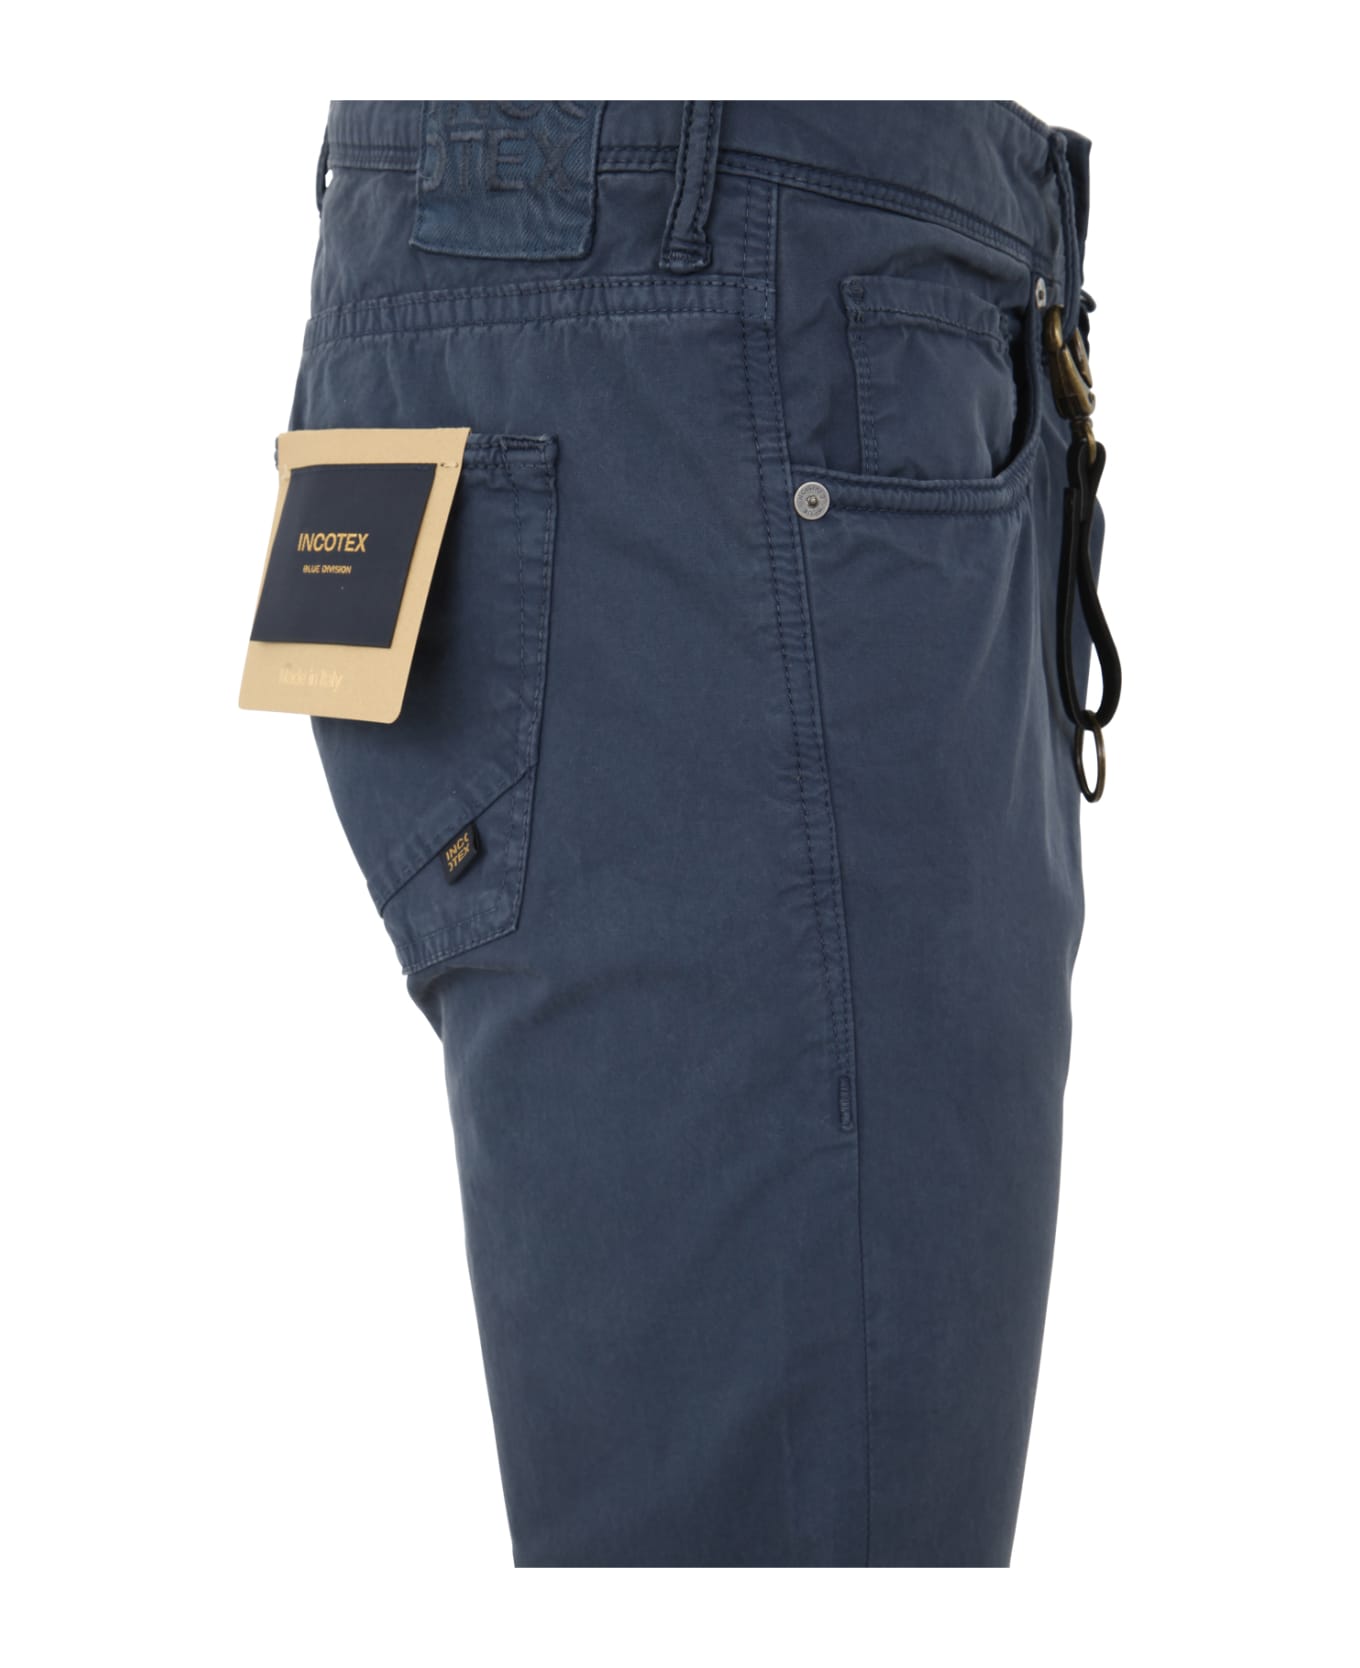 Incotex Genjc Five Pocket Solid Jeans - Medieval Blue